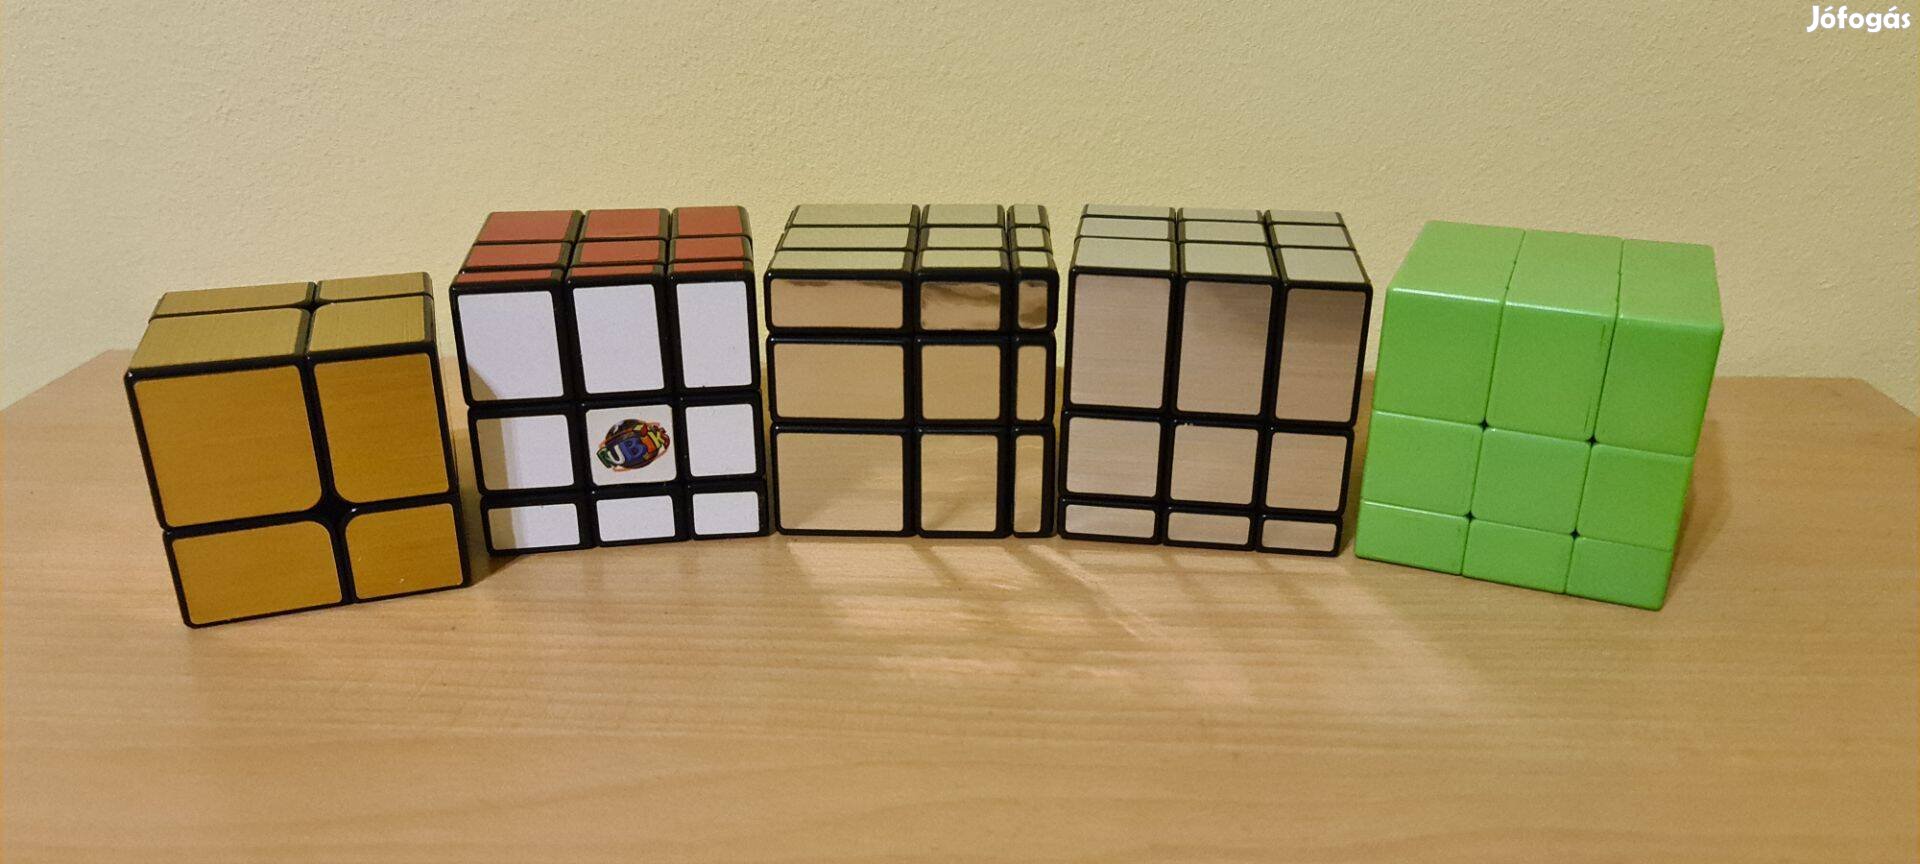 Yongjun mirror, Qiyi zöld 3x3x3 mirror, Rubik 3x3x3 tükör kocka